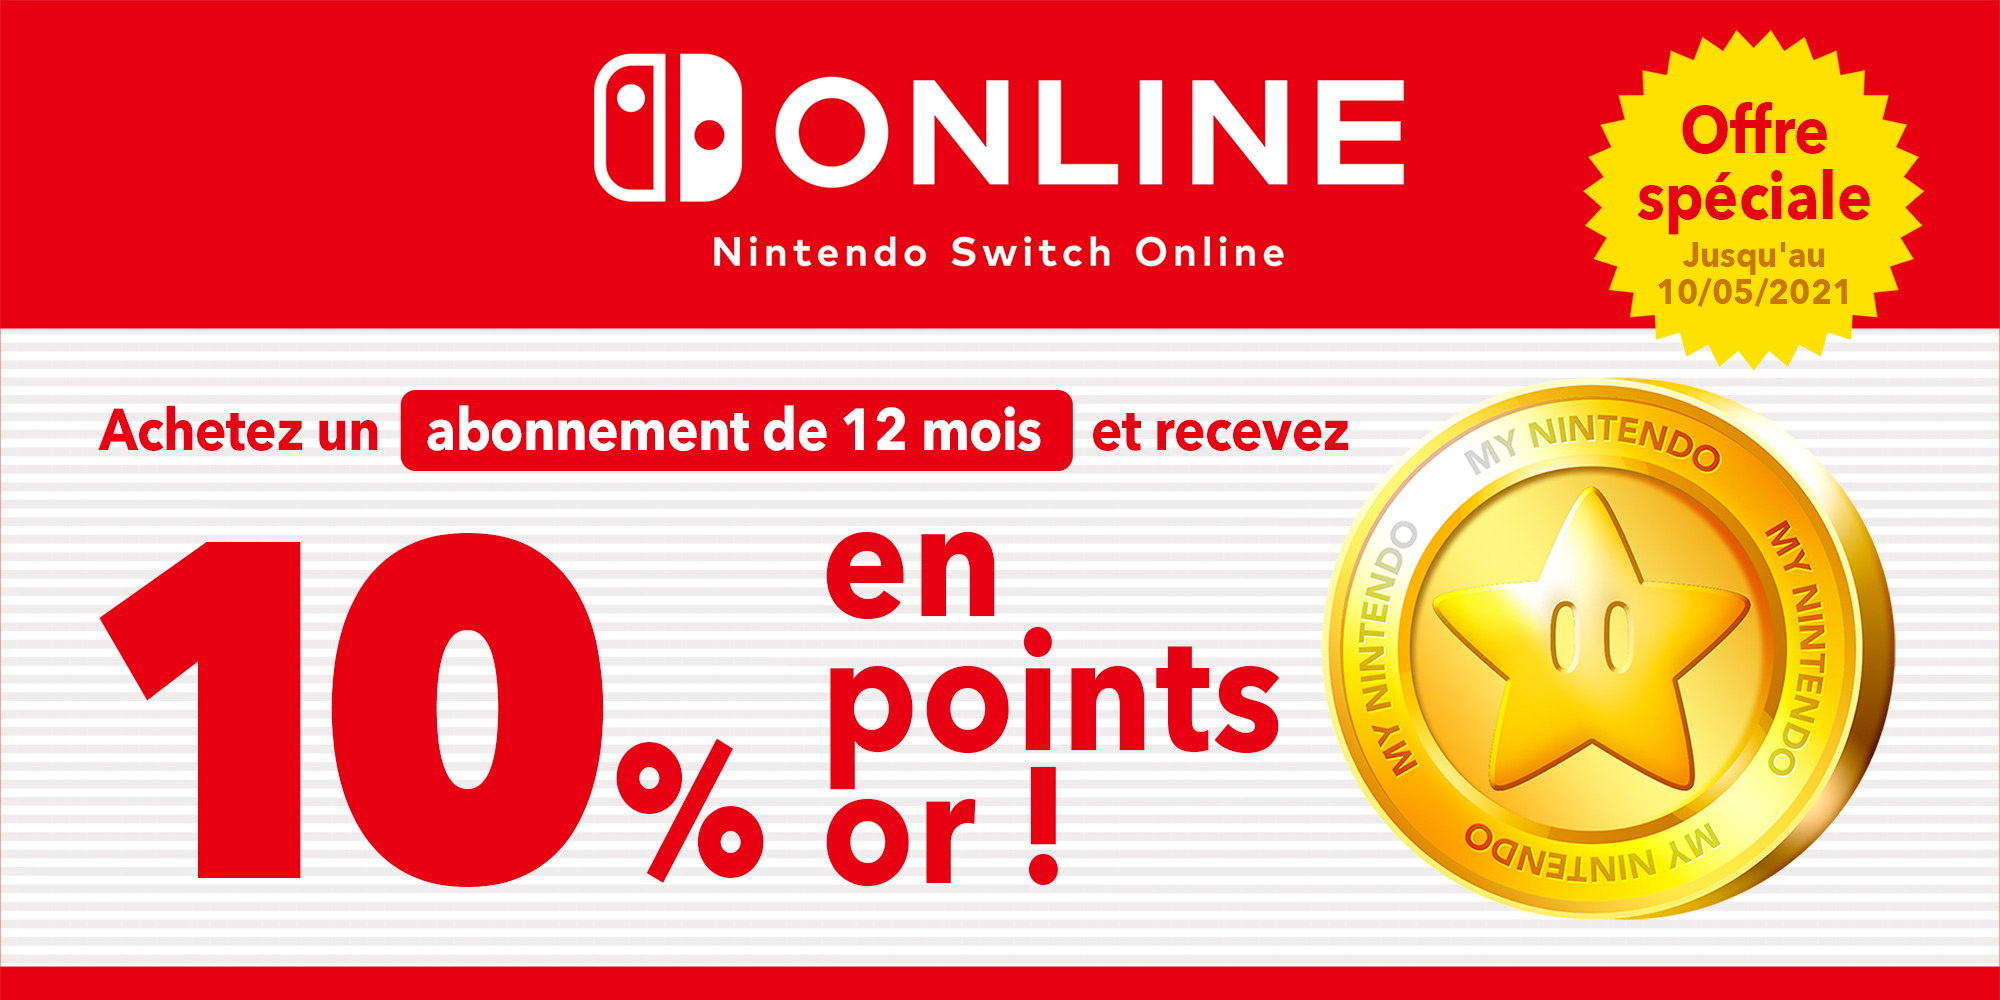 Offre spéciale : obtenez jusqu'à CHF 4.90 en points or en vous abonnant pour 12 mois au service Nintendo Switch Online !